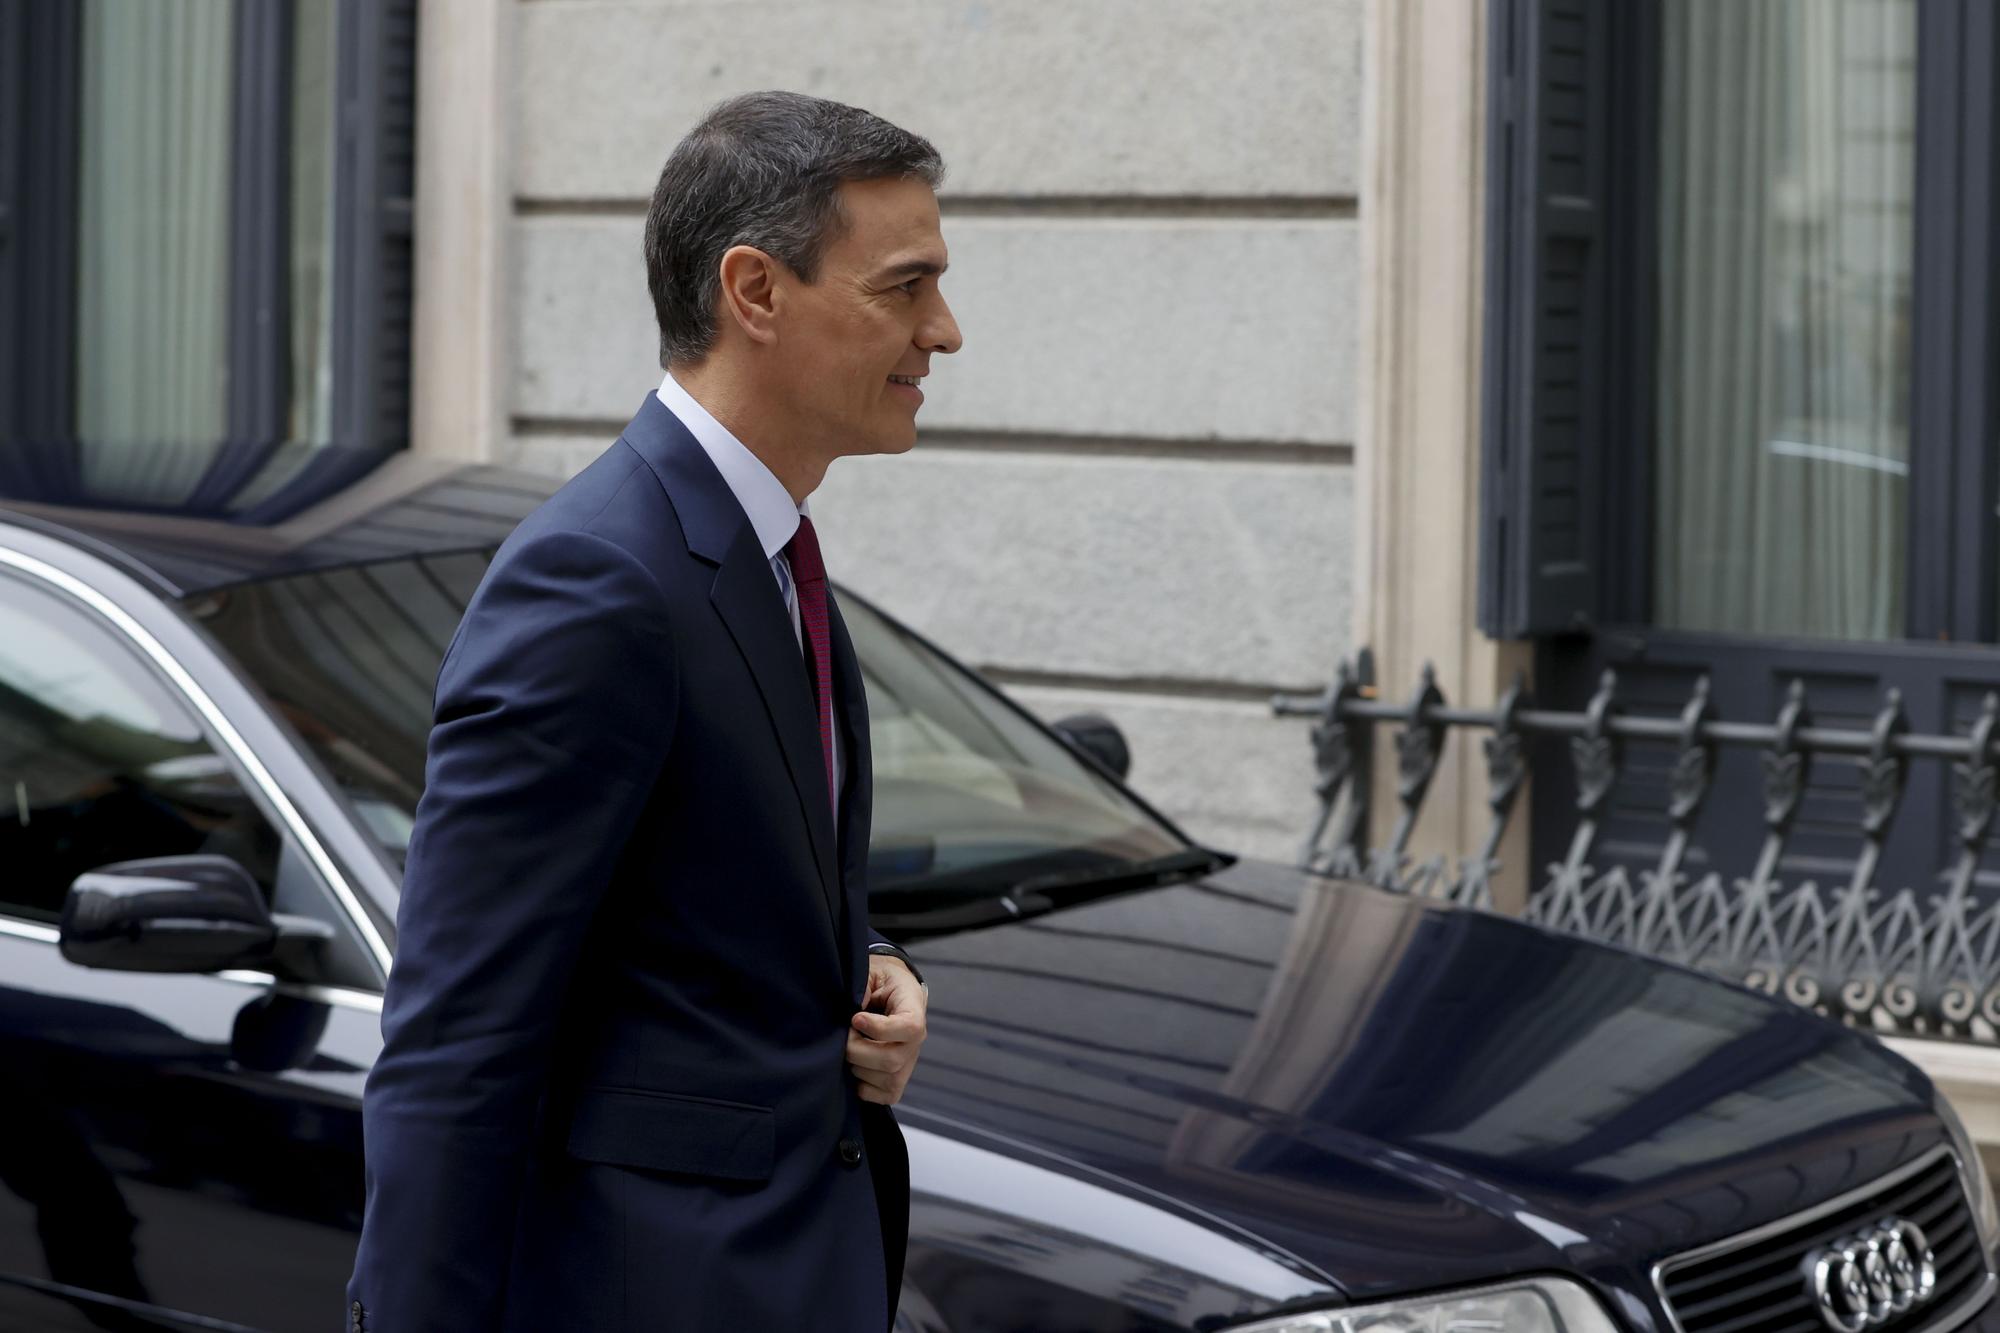 Sánchez expone hoy su nuevo plan de Gobierno en un debate de investidura que se prevé duro